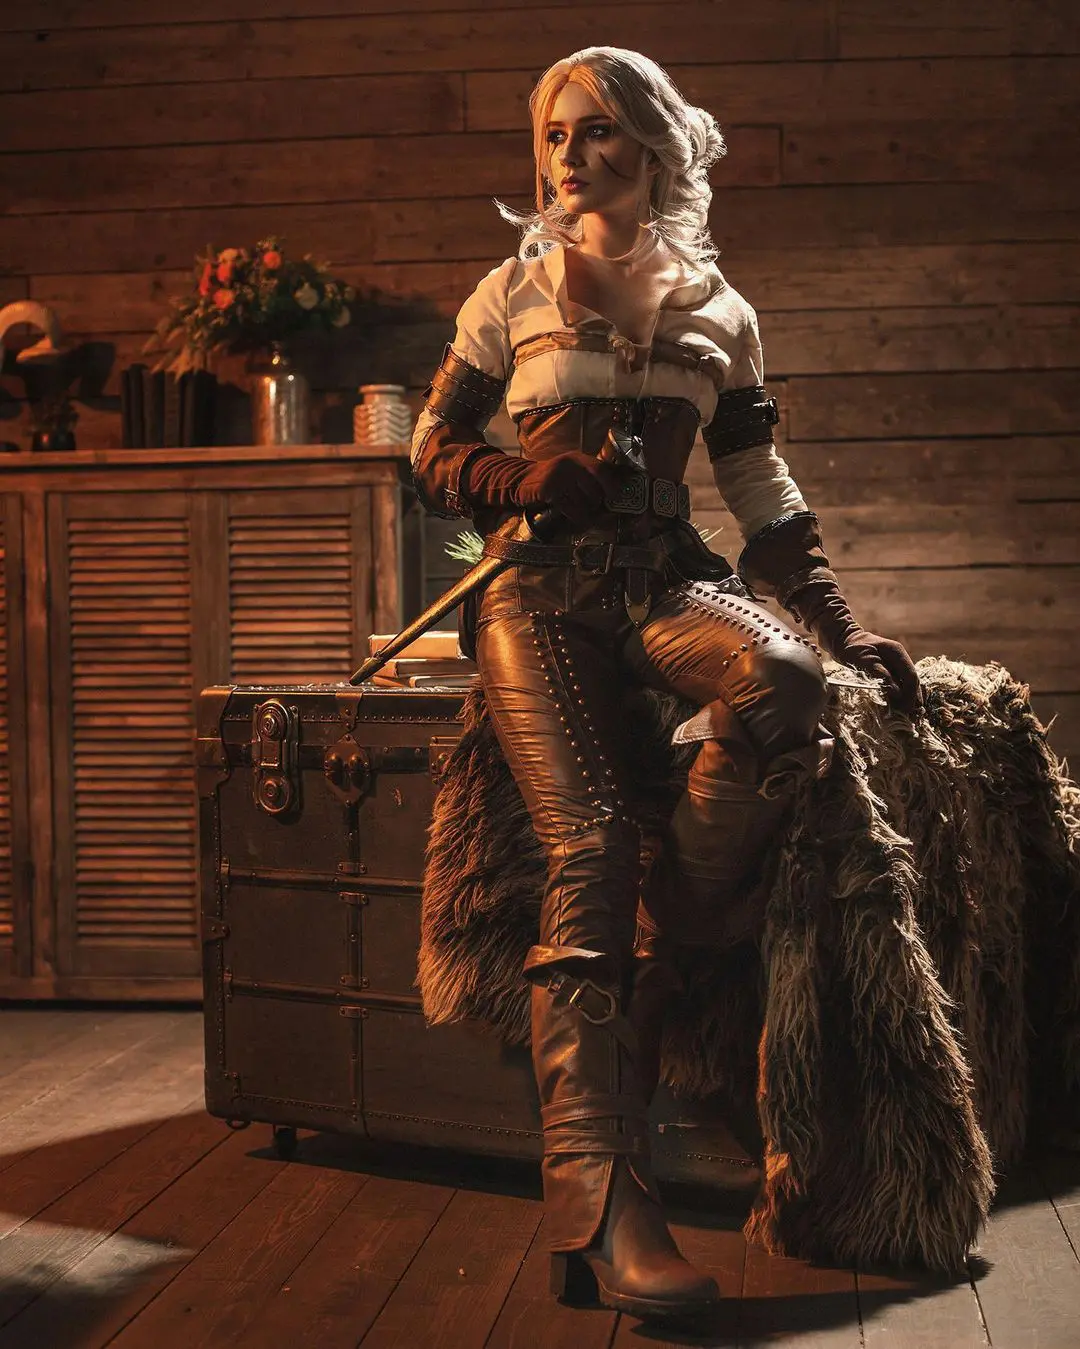 Imagem do cosplay da personagem Ciri, de The Witcher 3, sentada em cima de um baú